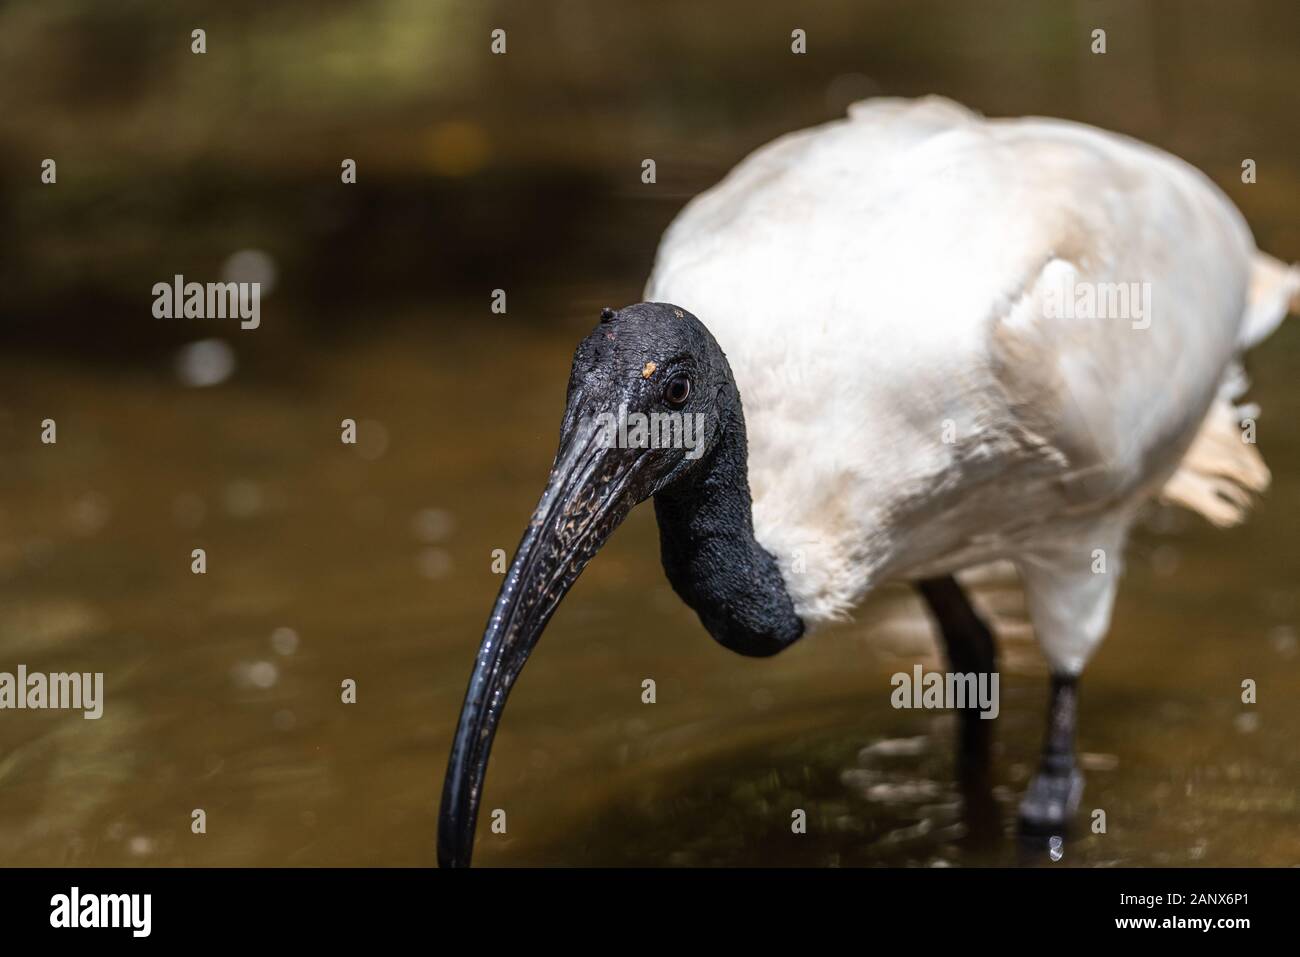 Ibis Blanco cerca de aves menores perfil ver con fondo de roca, mostrando alas, plumas marrón plumaje, cuerpo, cabeza, ojos, pico, cuello largo Foto de stock